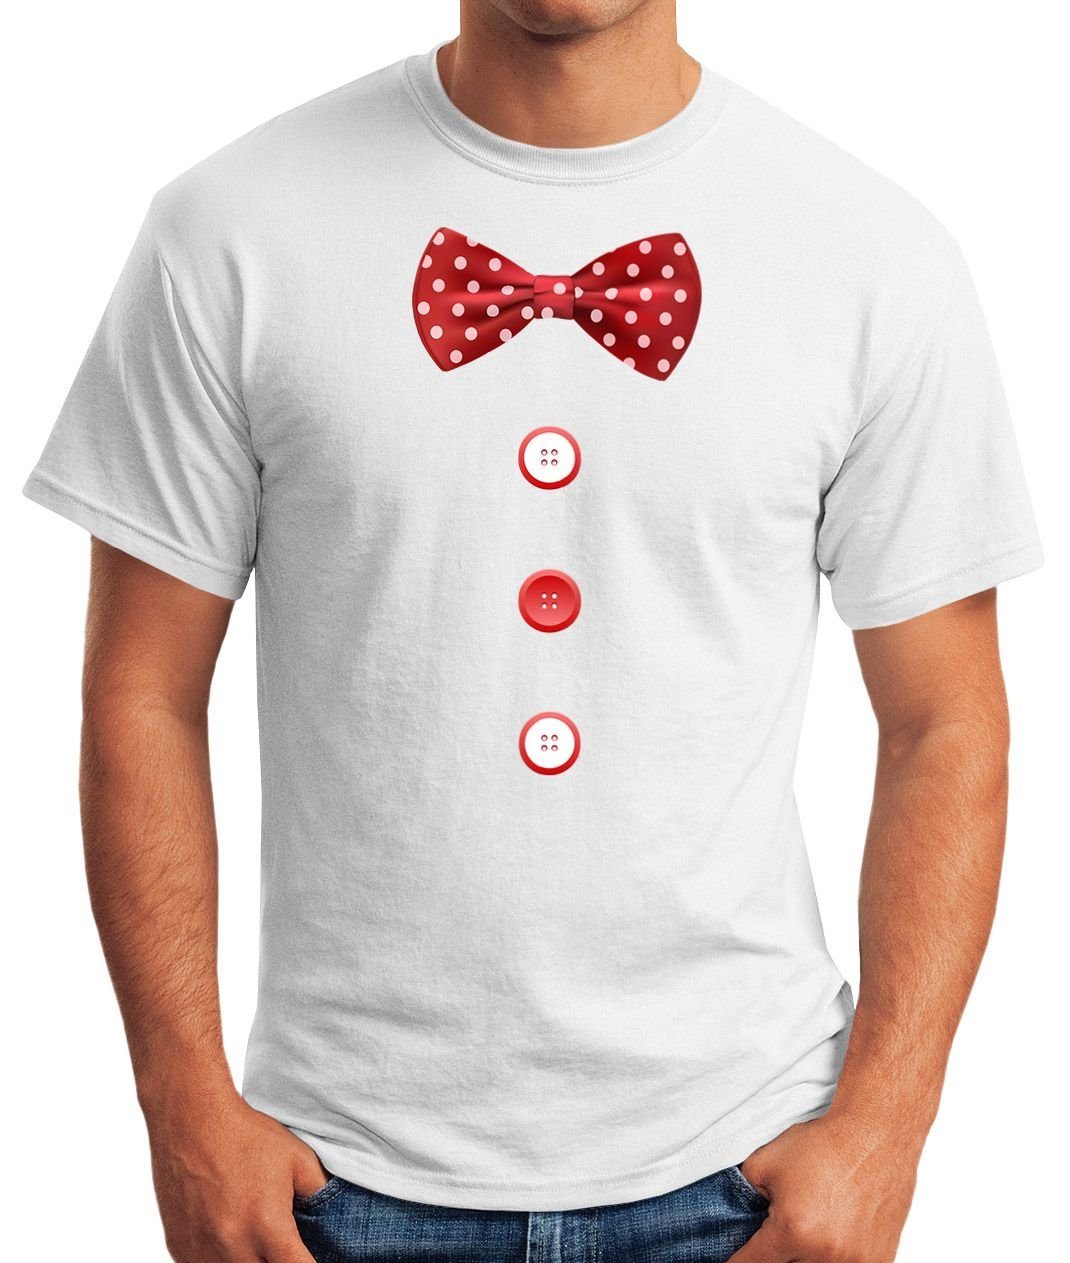 Fasching Fliege Print mit Knöpfe Karneval MoonWorks Herren Fastnacht Clown Schleife Moonworks® Print-Shirt Kostüm weiß T-Shirt